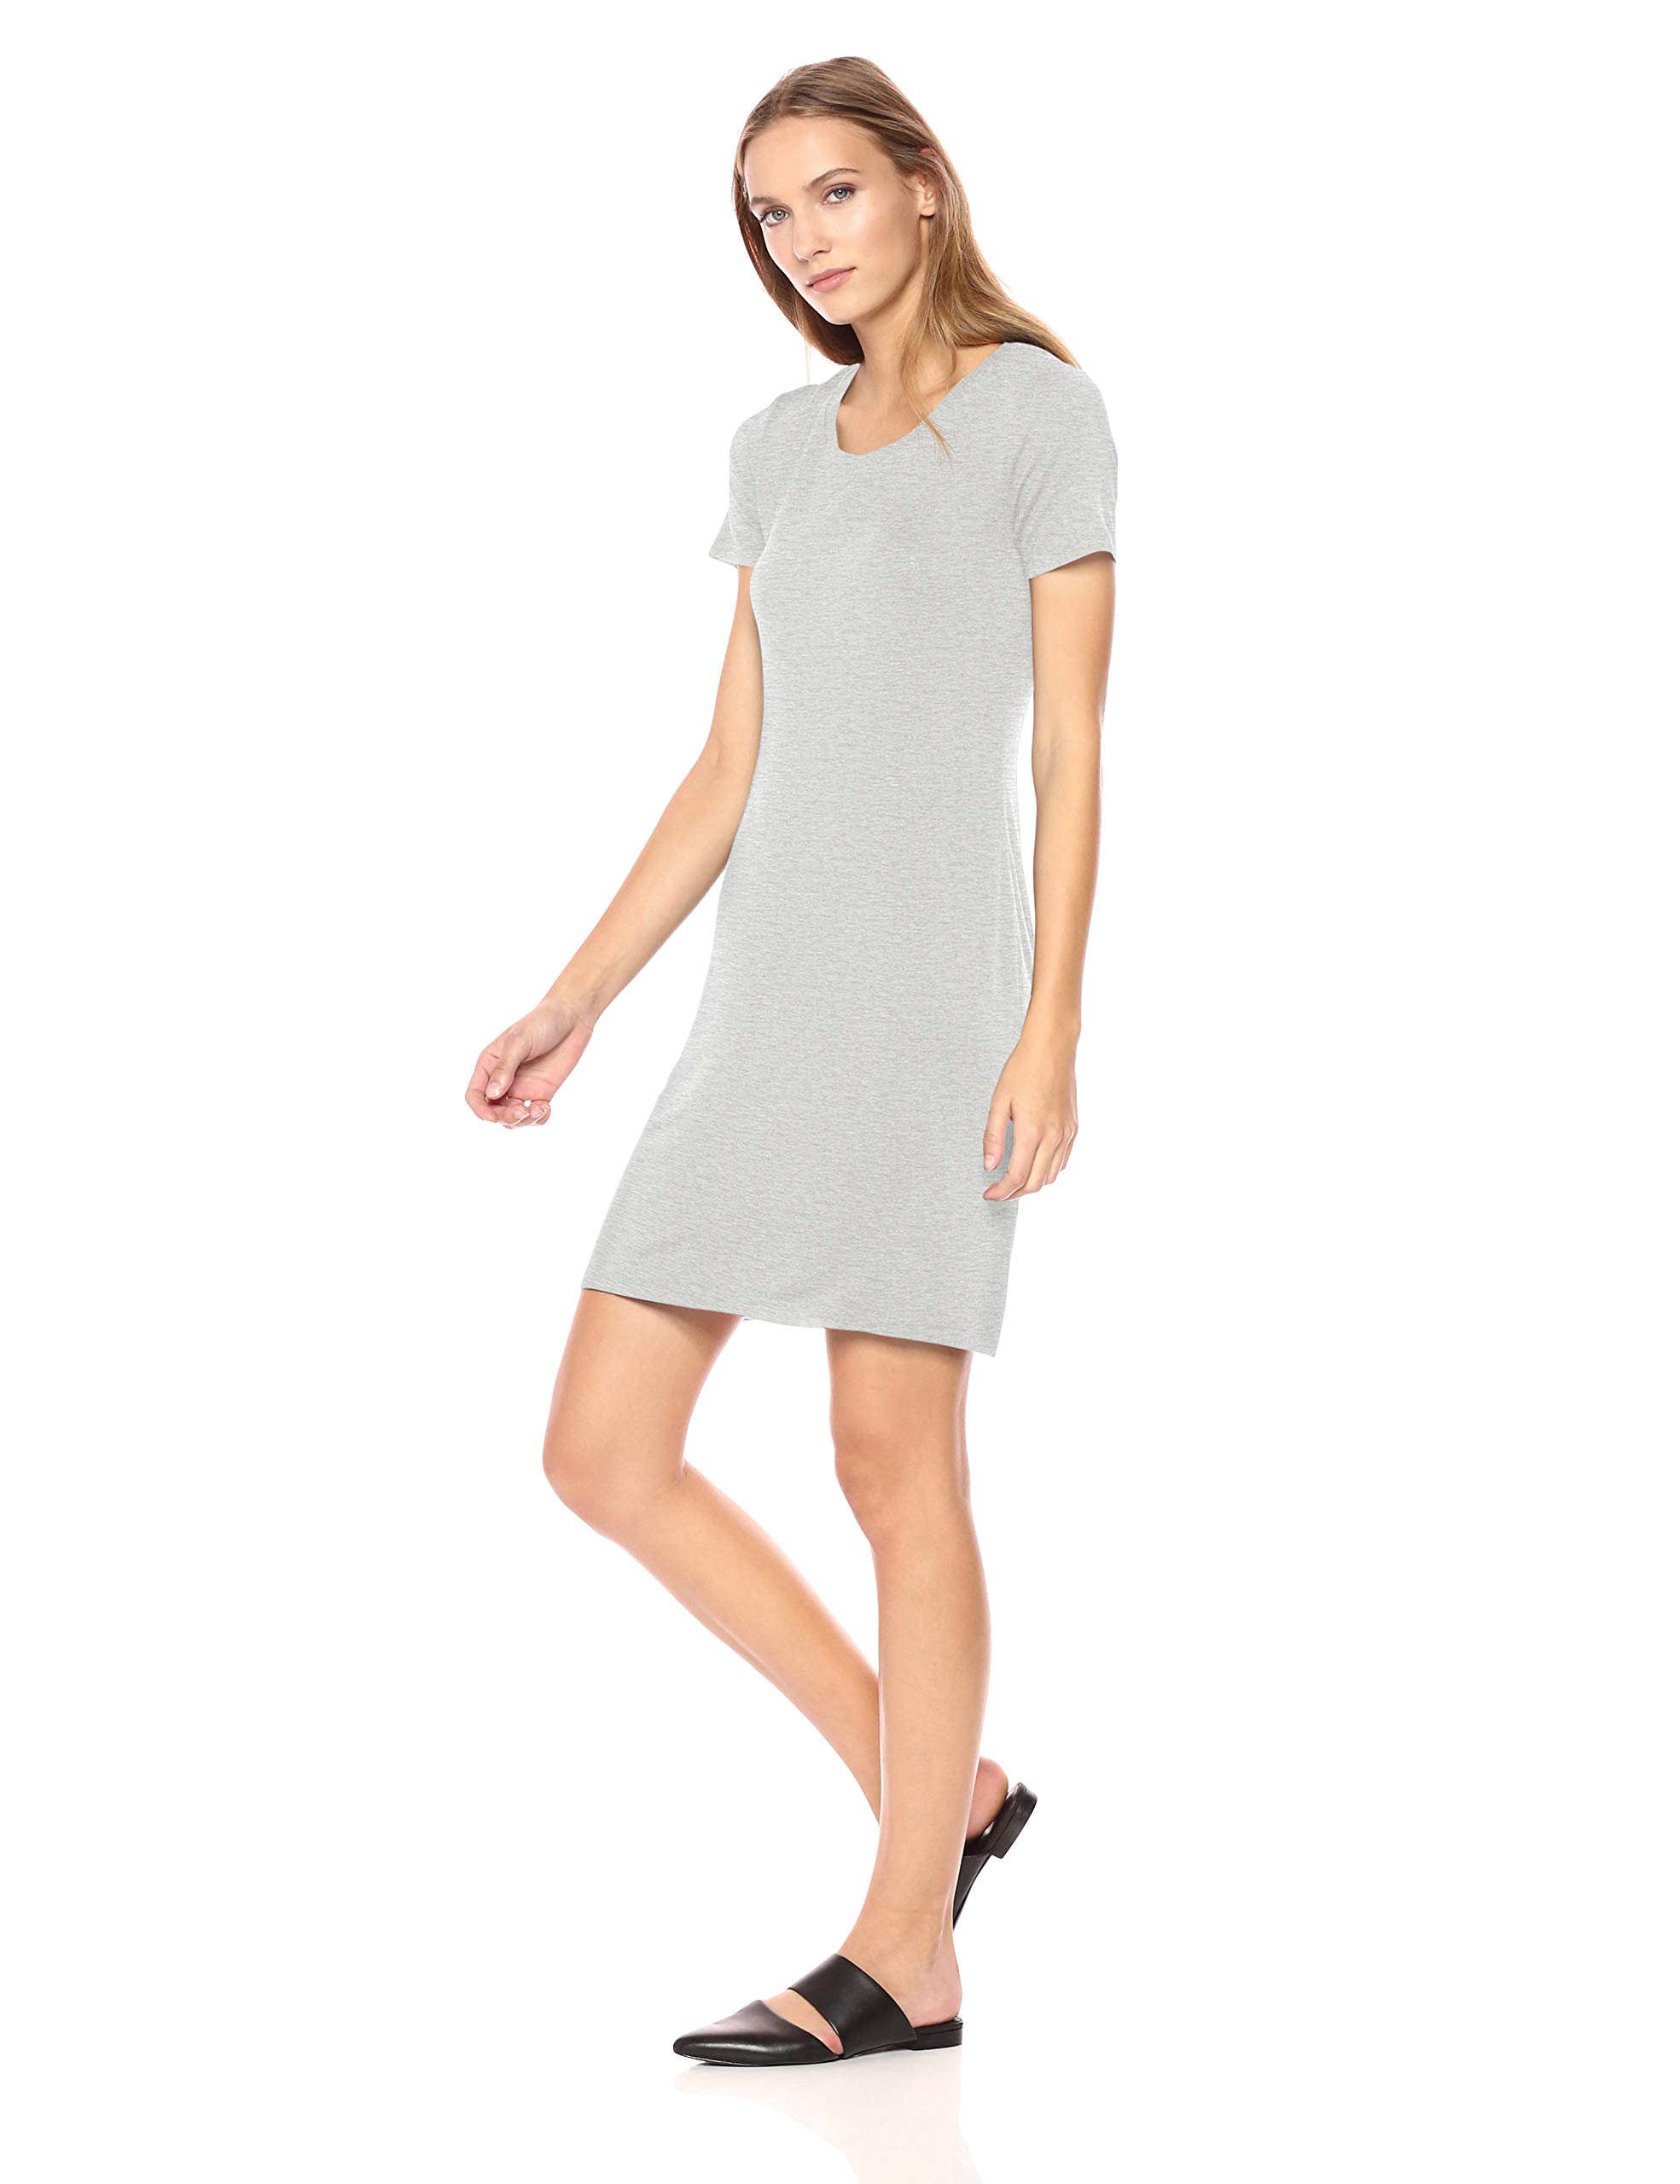 Daily Ritual Women's Jersey Standard-Fit Short-Sleeve Scoopneck T-Shirt Dress